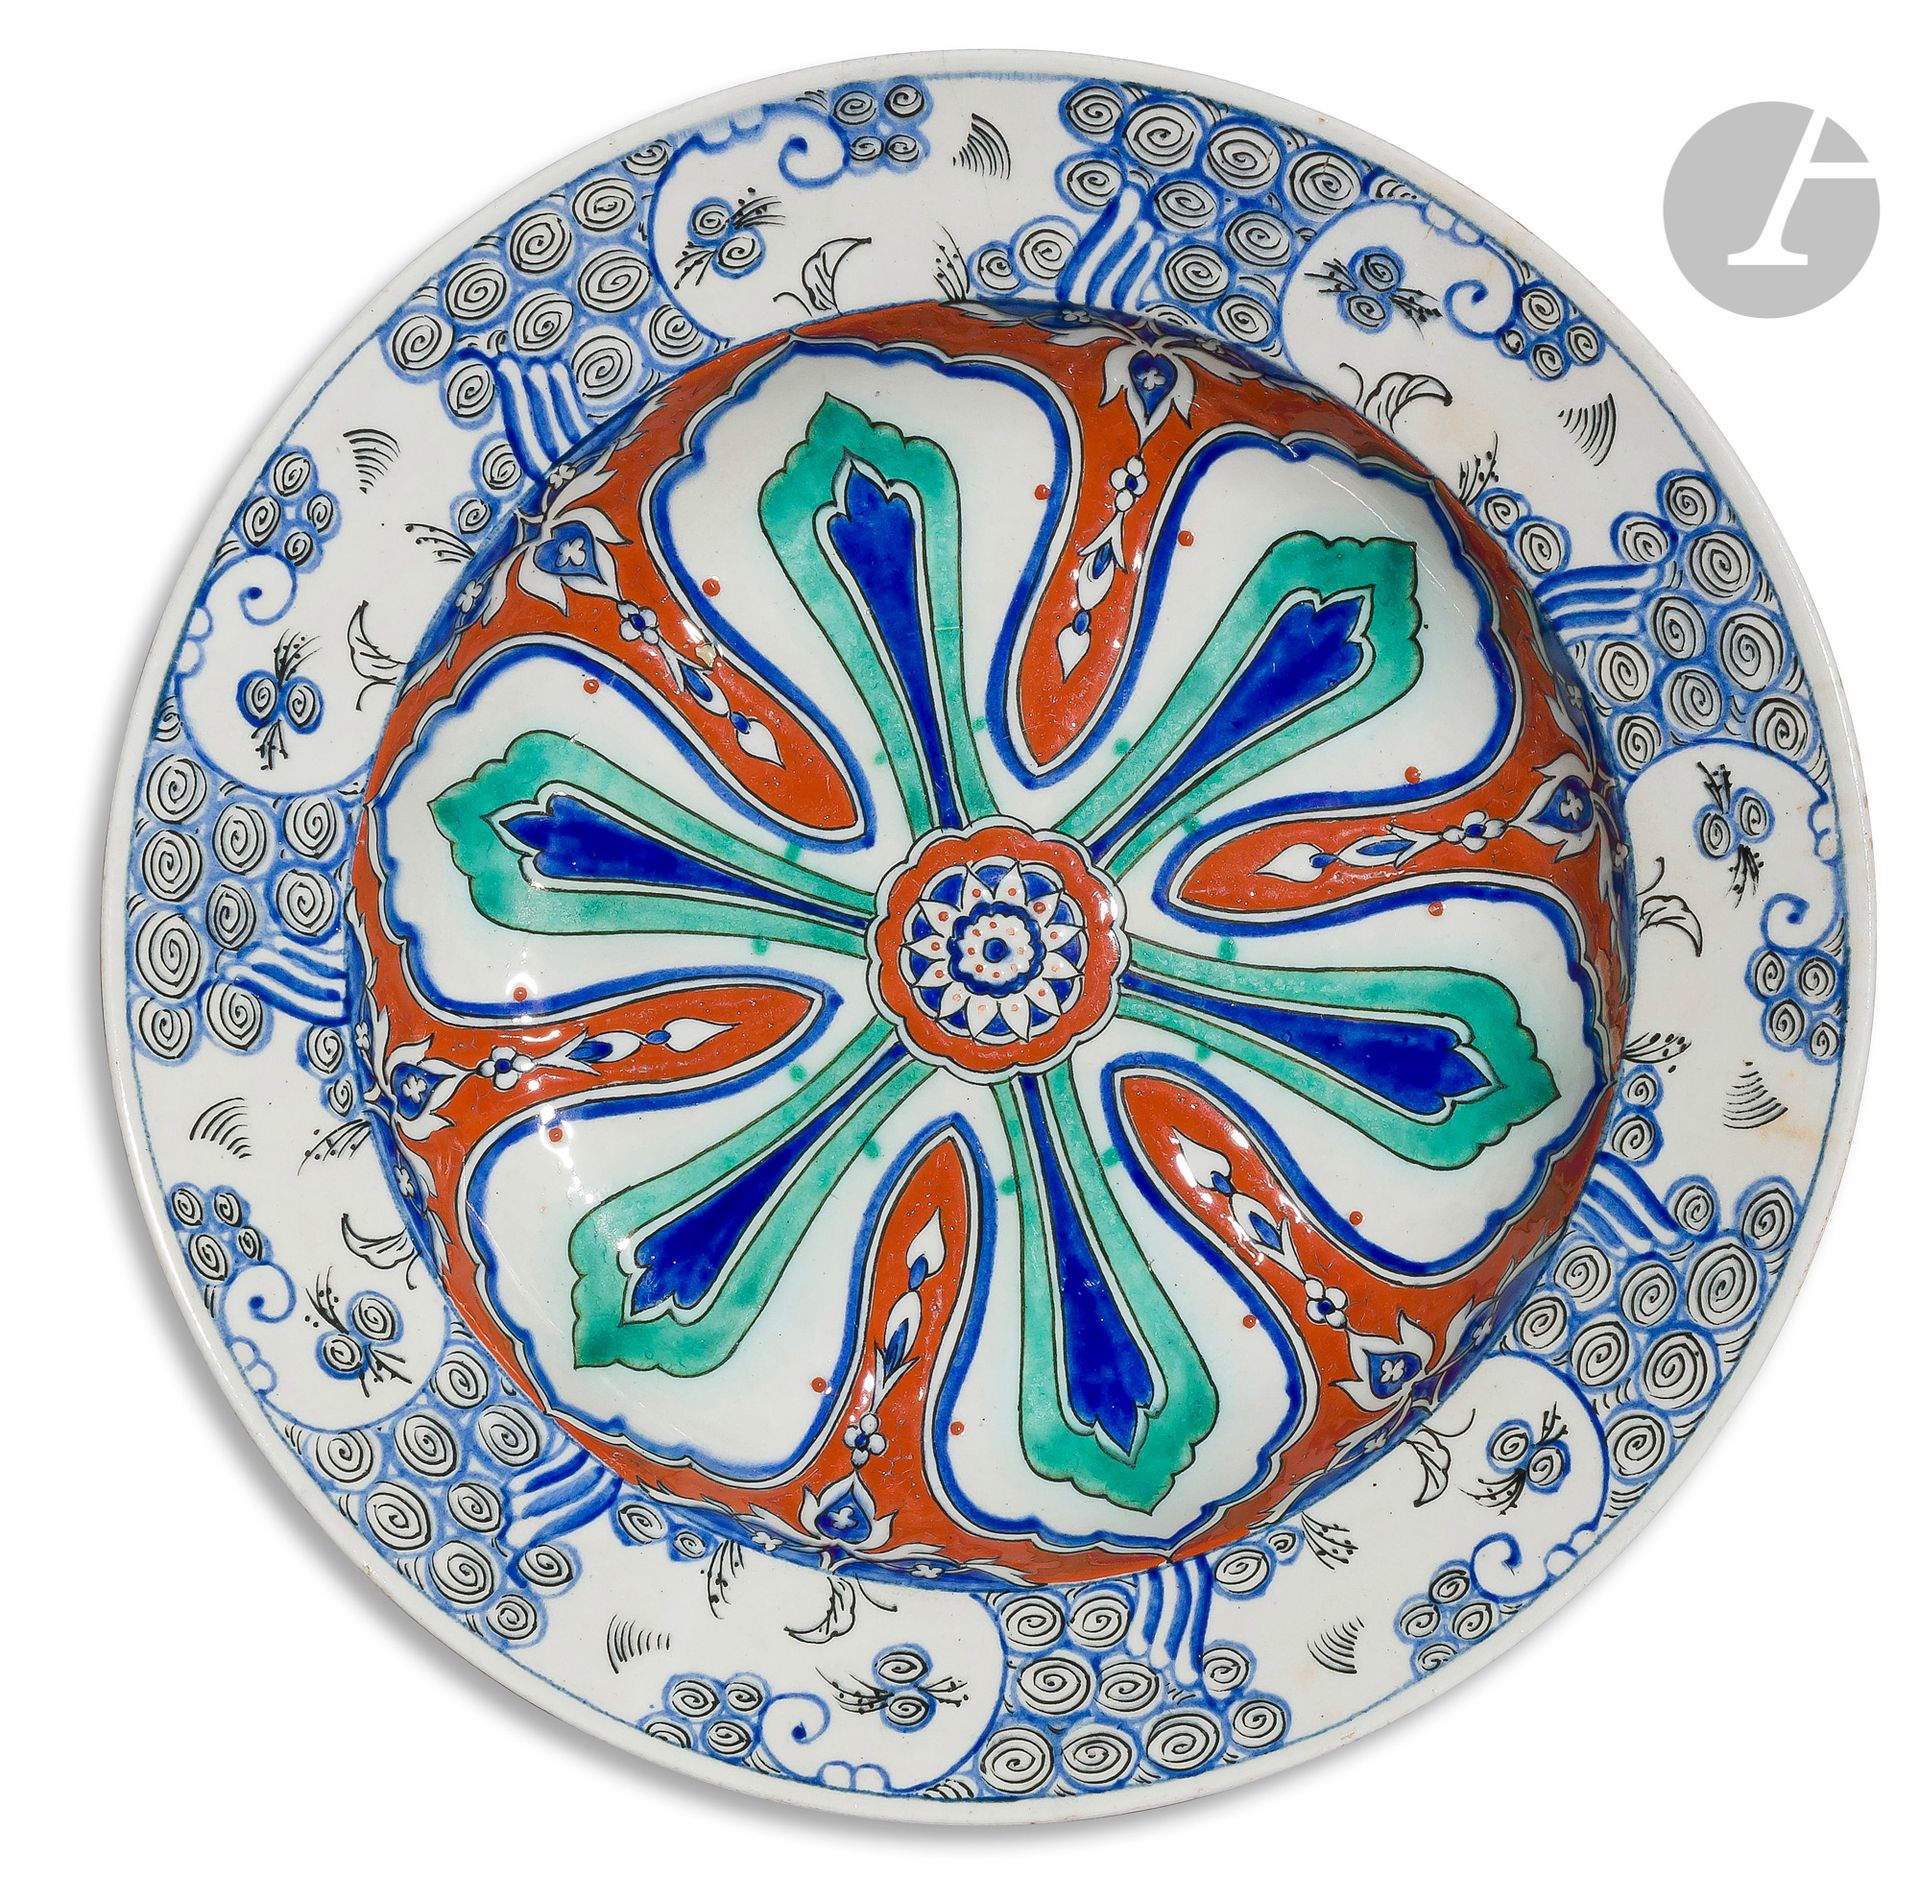 Null 萨姆松，埃米尔（1837-1913），伊兹尼克风格的盘子，19世纪末-20世纪初
圆底空心盘，陶器，红底绿色和蓝色羊角花的花环装饰，边缘有造型的波浪和&hellip;